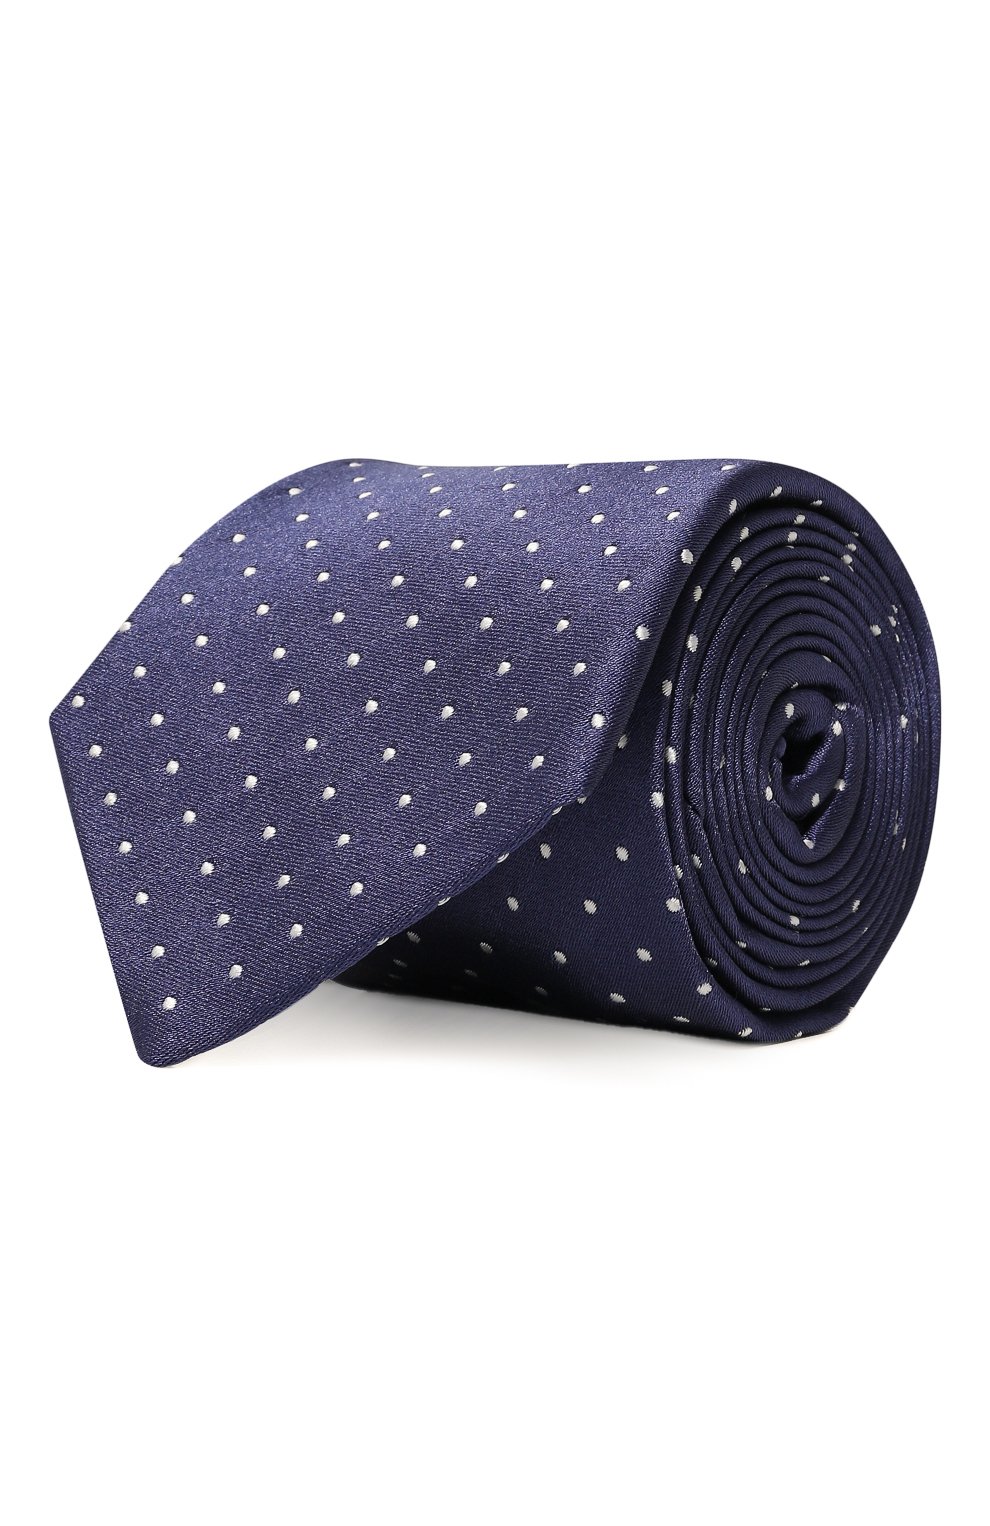 Фото Мужской синий шелковый галстук LUIGI BORRELLI, арт. CR1070 Италия CR1070 